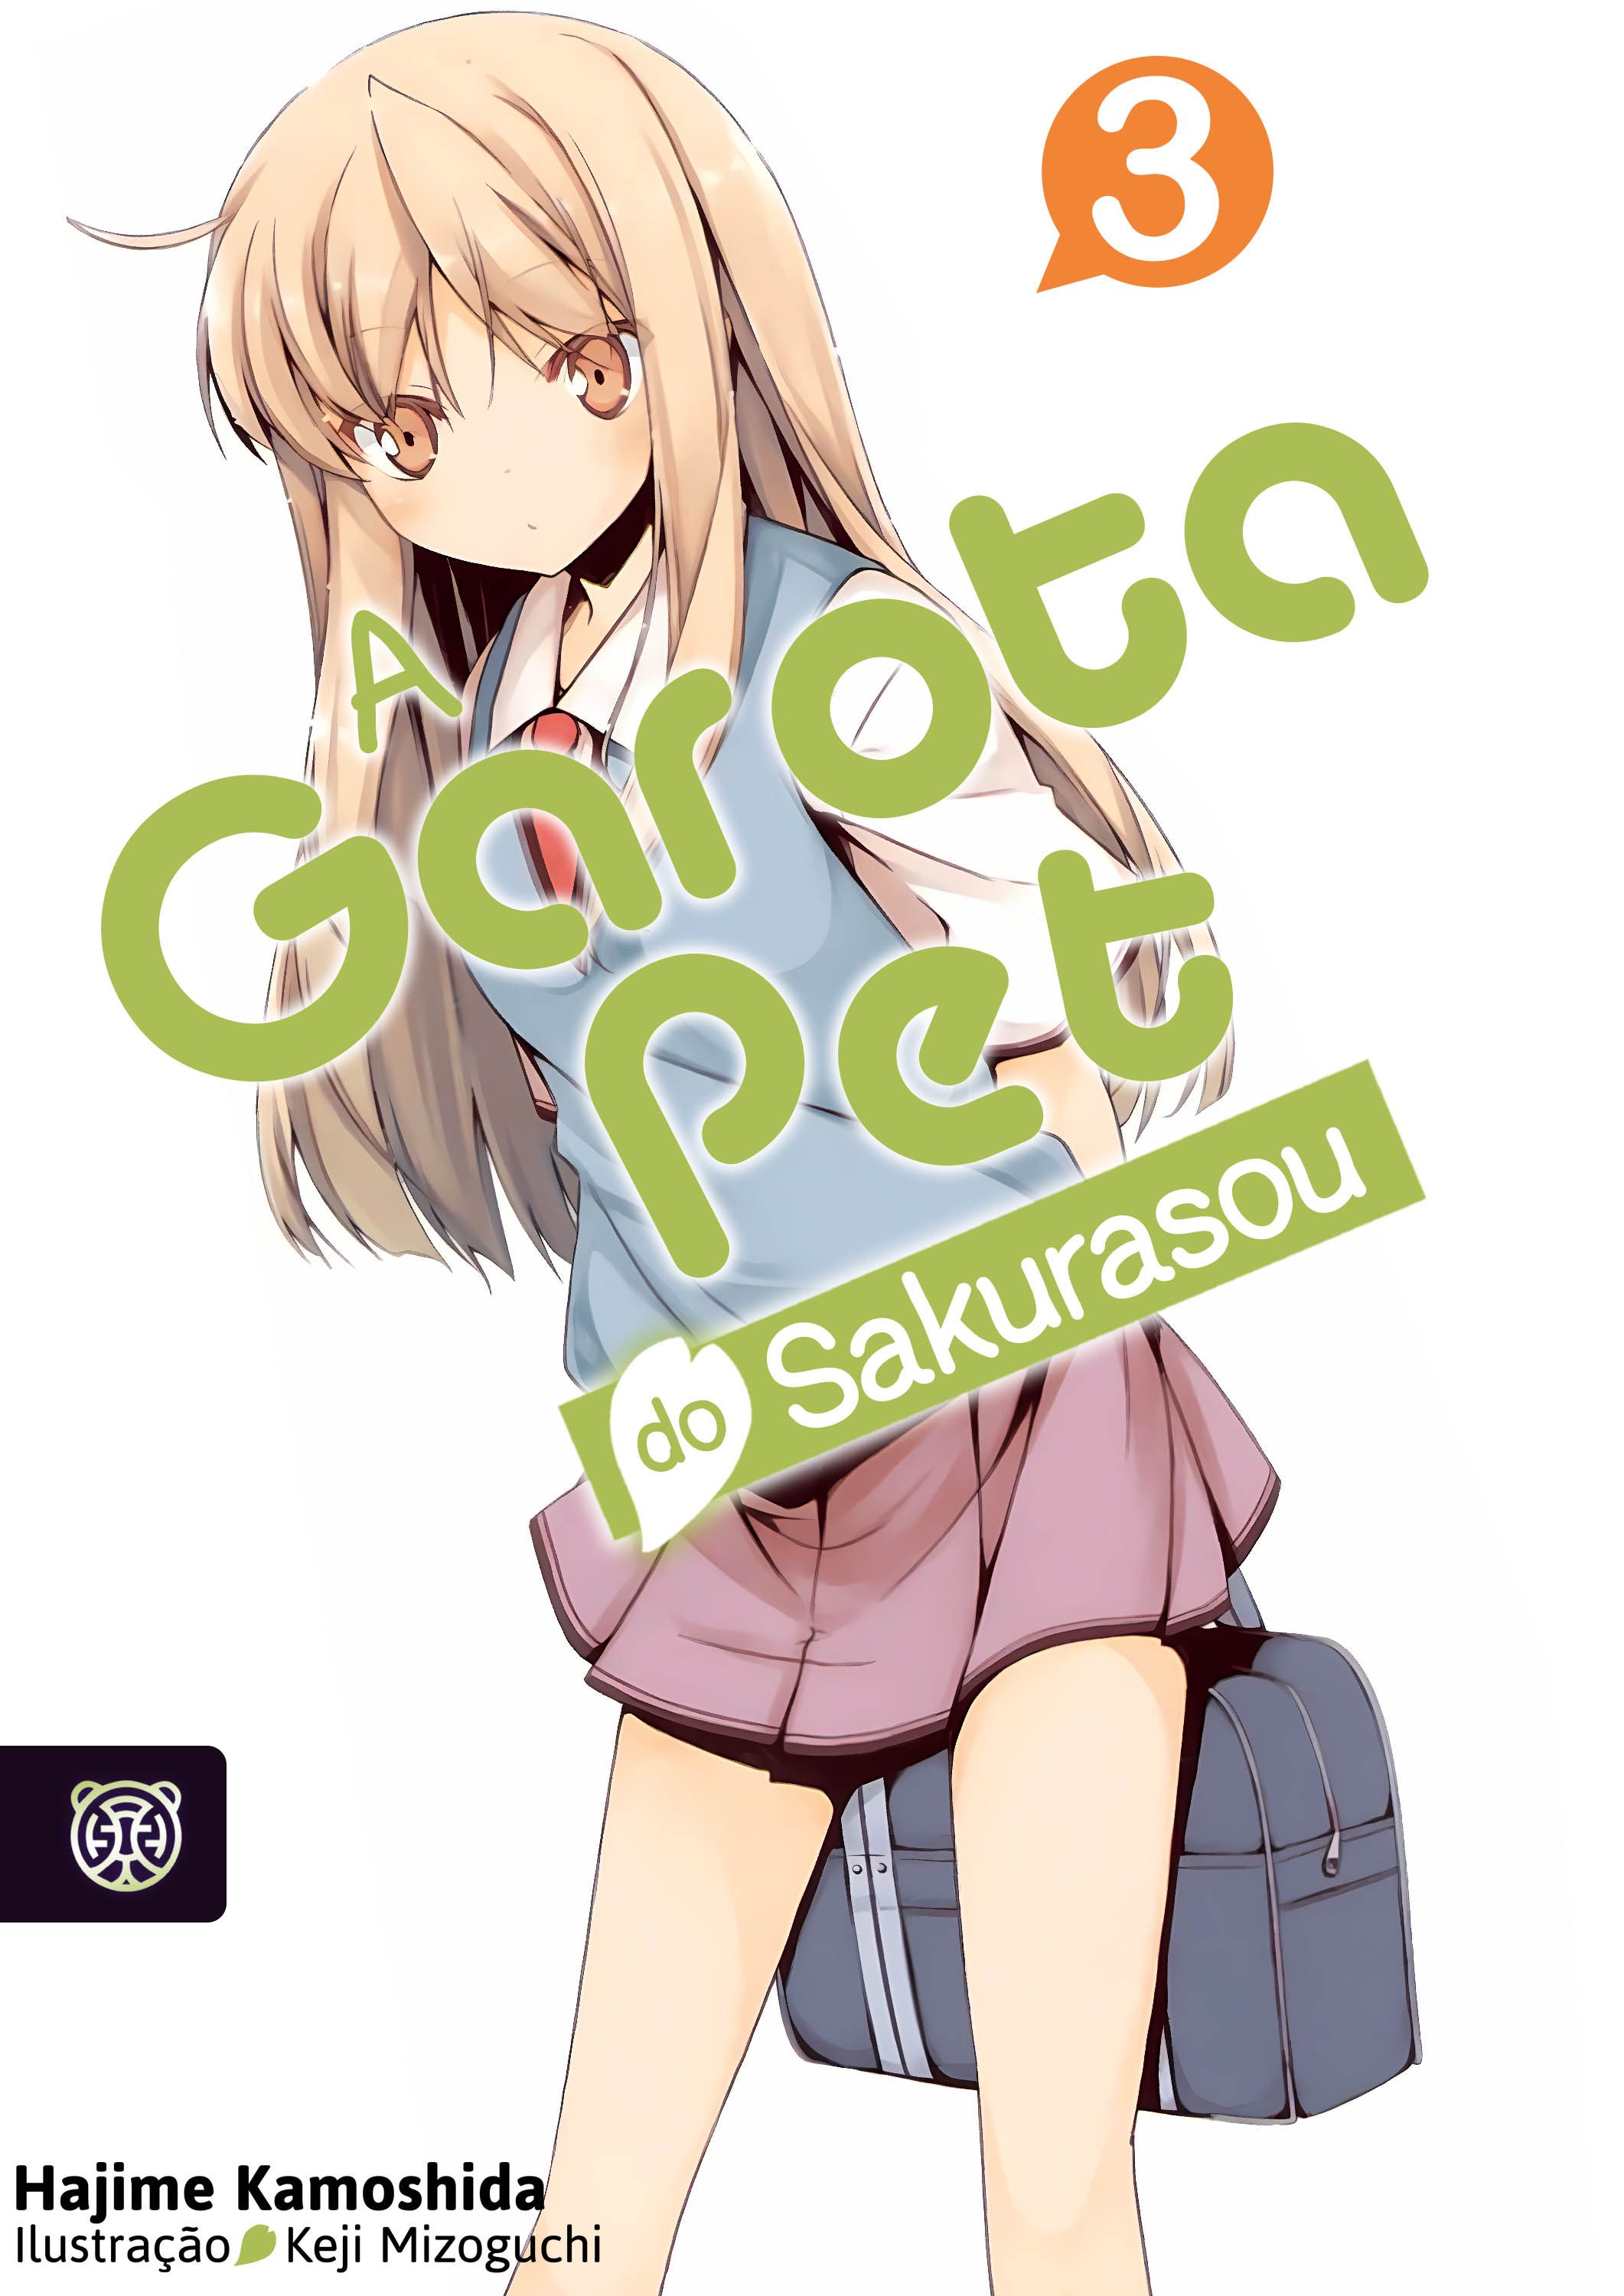 Capa da novel A Garota Pet do Sakurasou